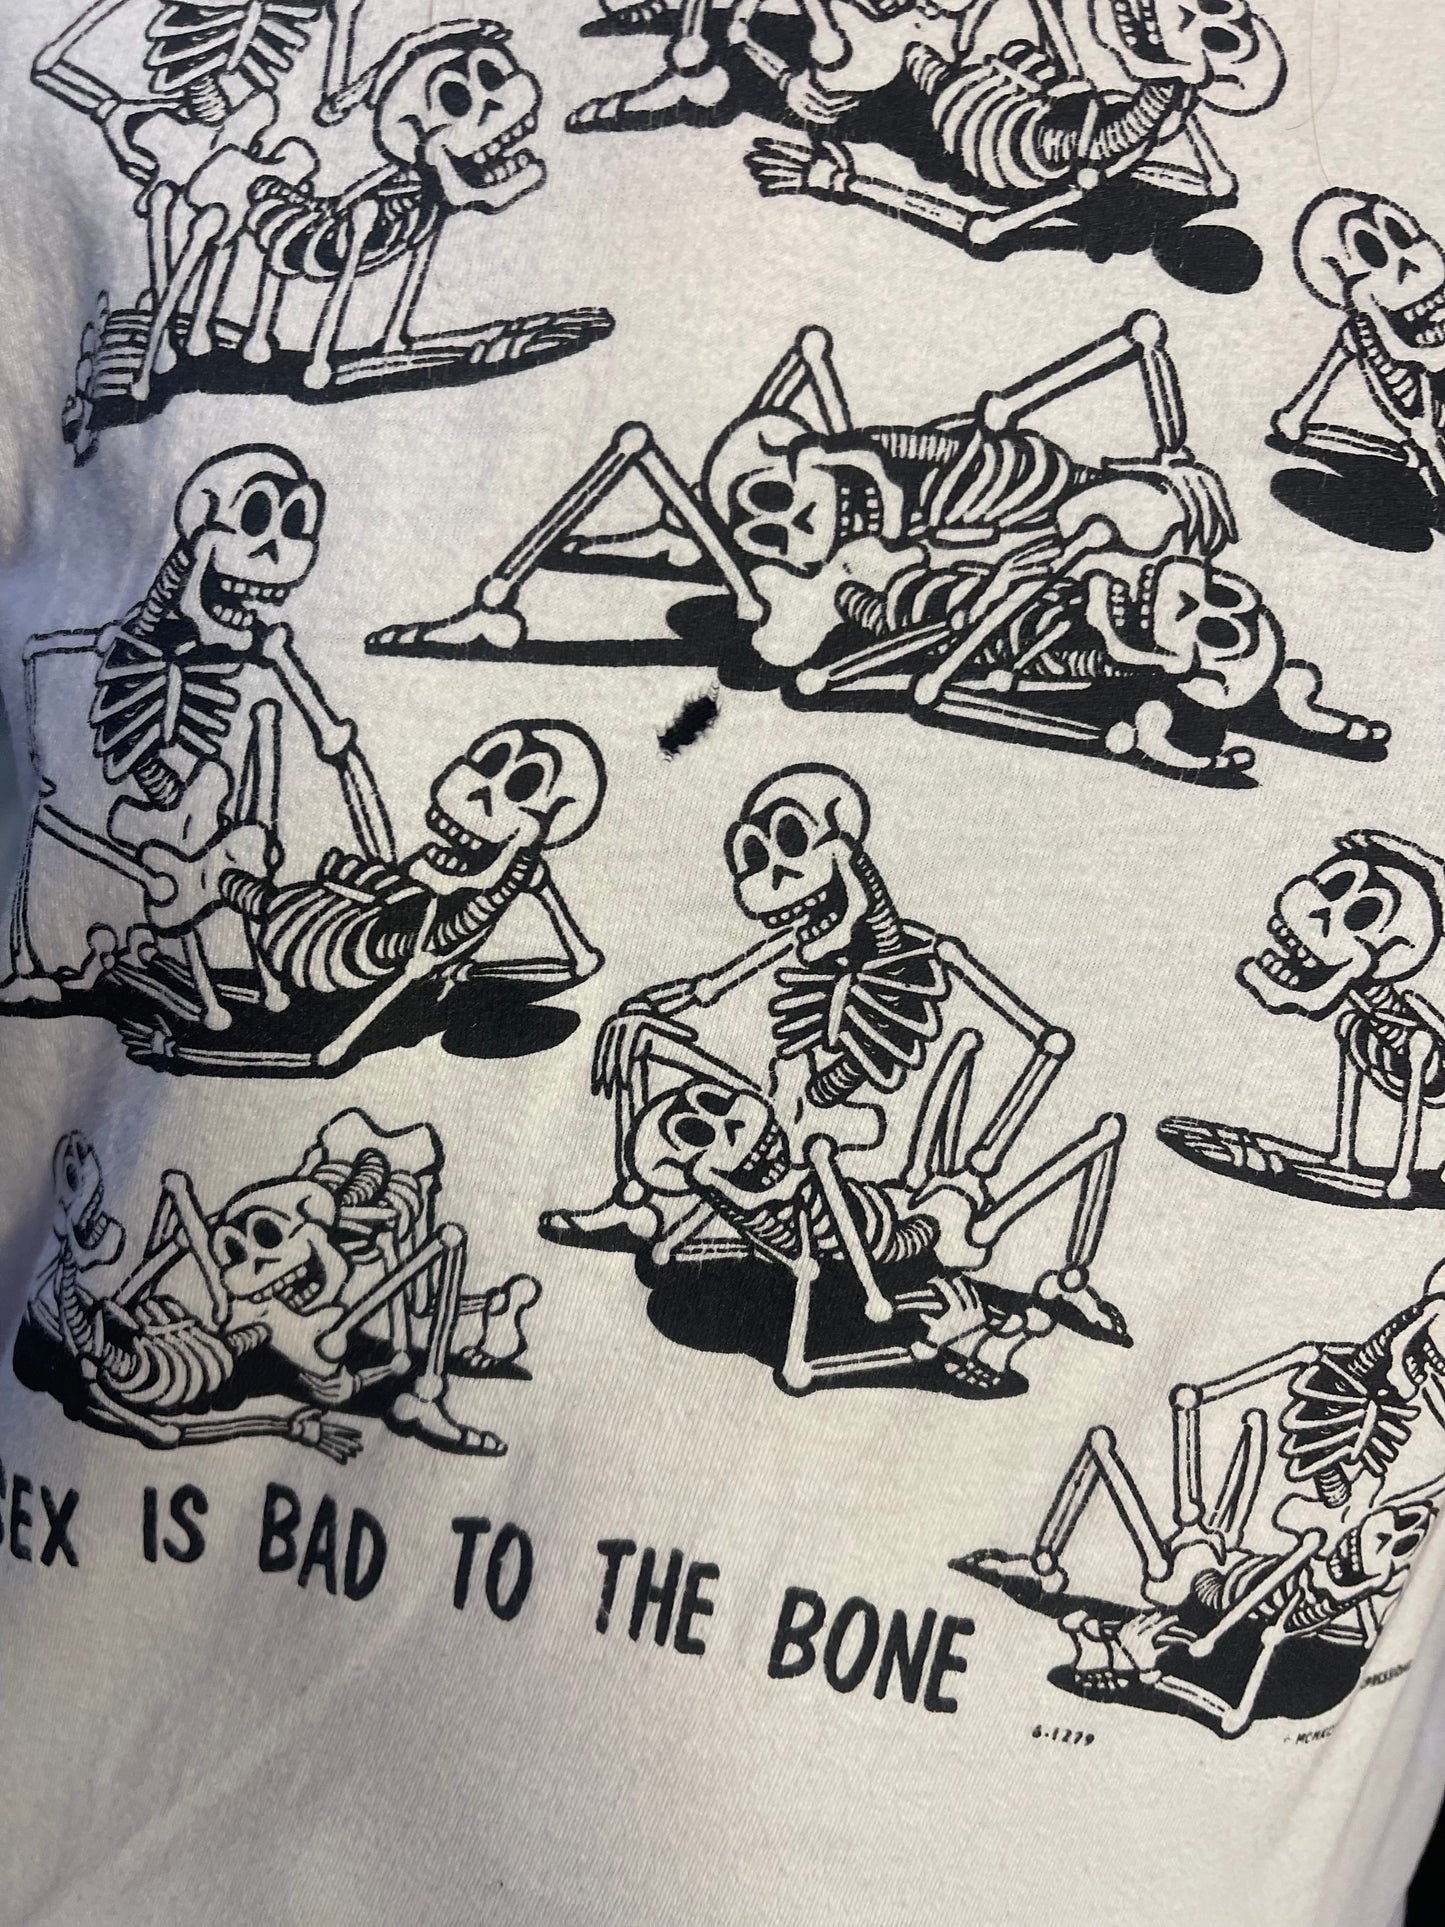 Vintage 90s Sex Skeletons T-shirt